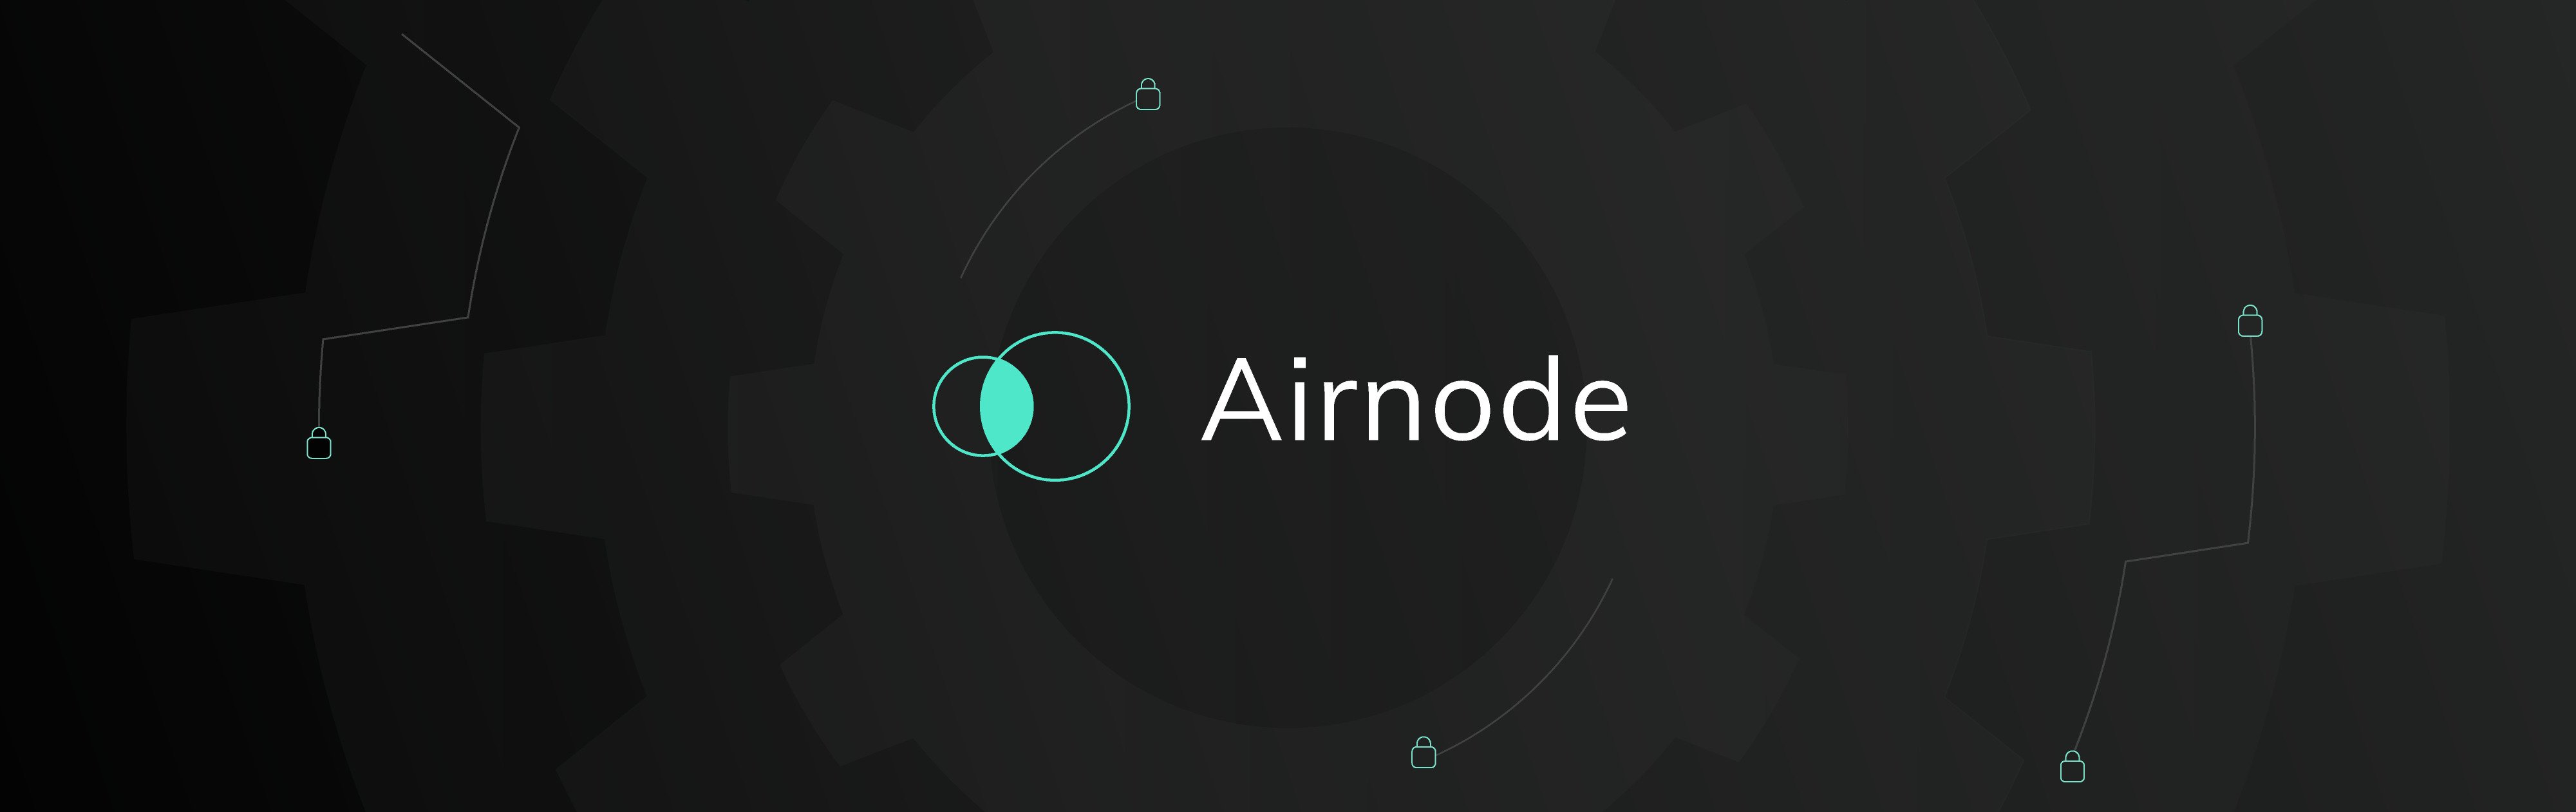 برنامه های airnode